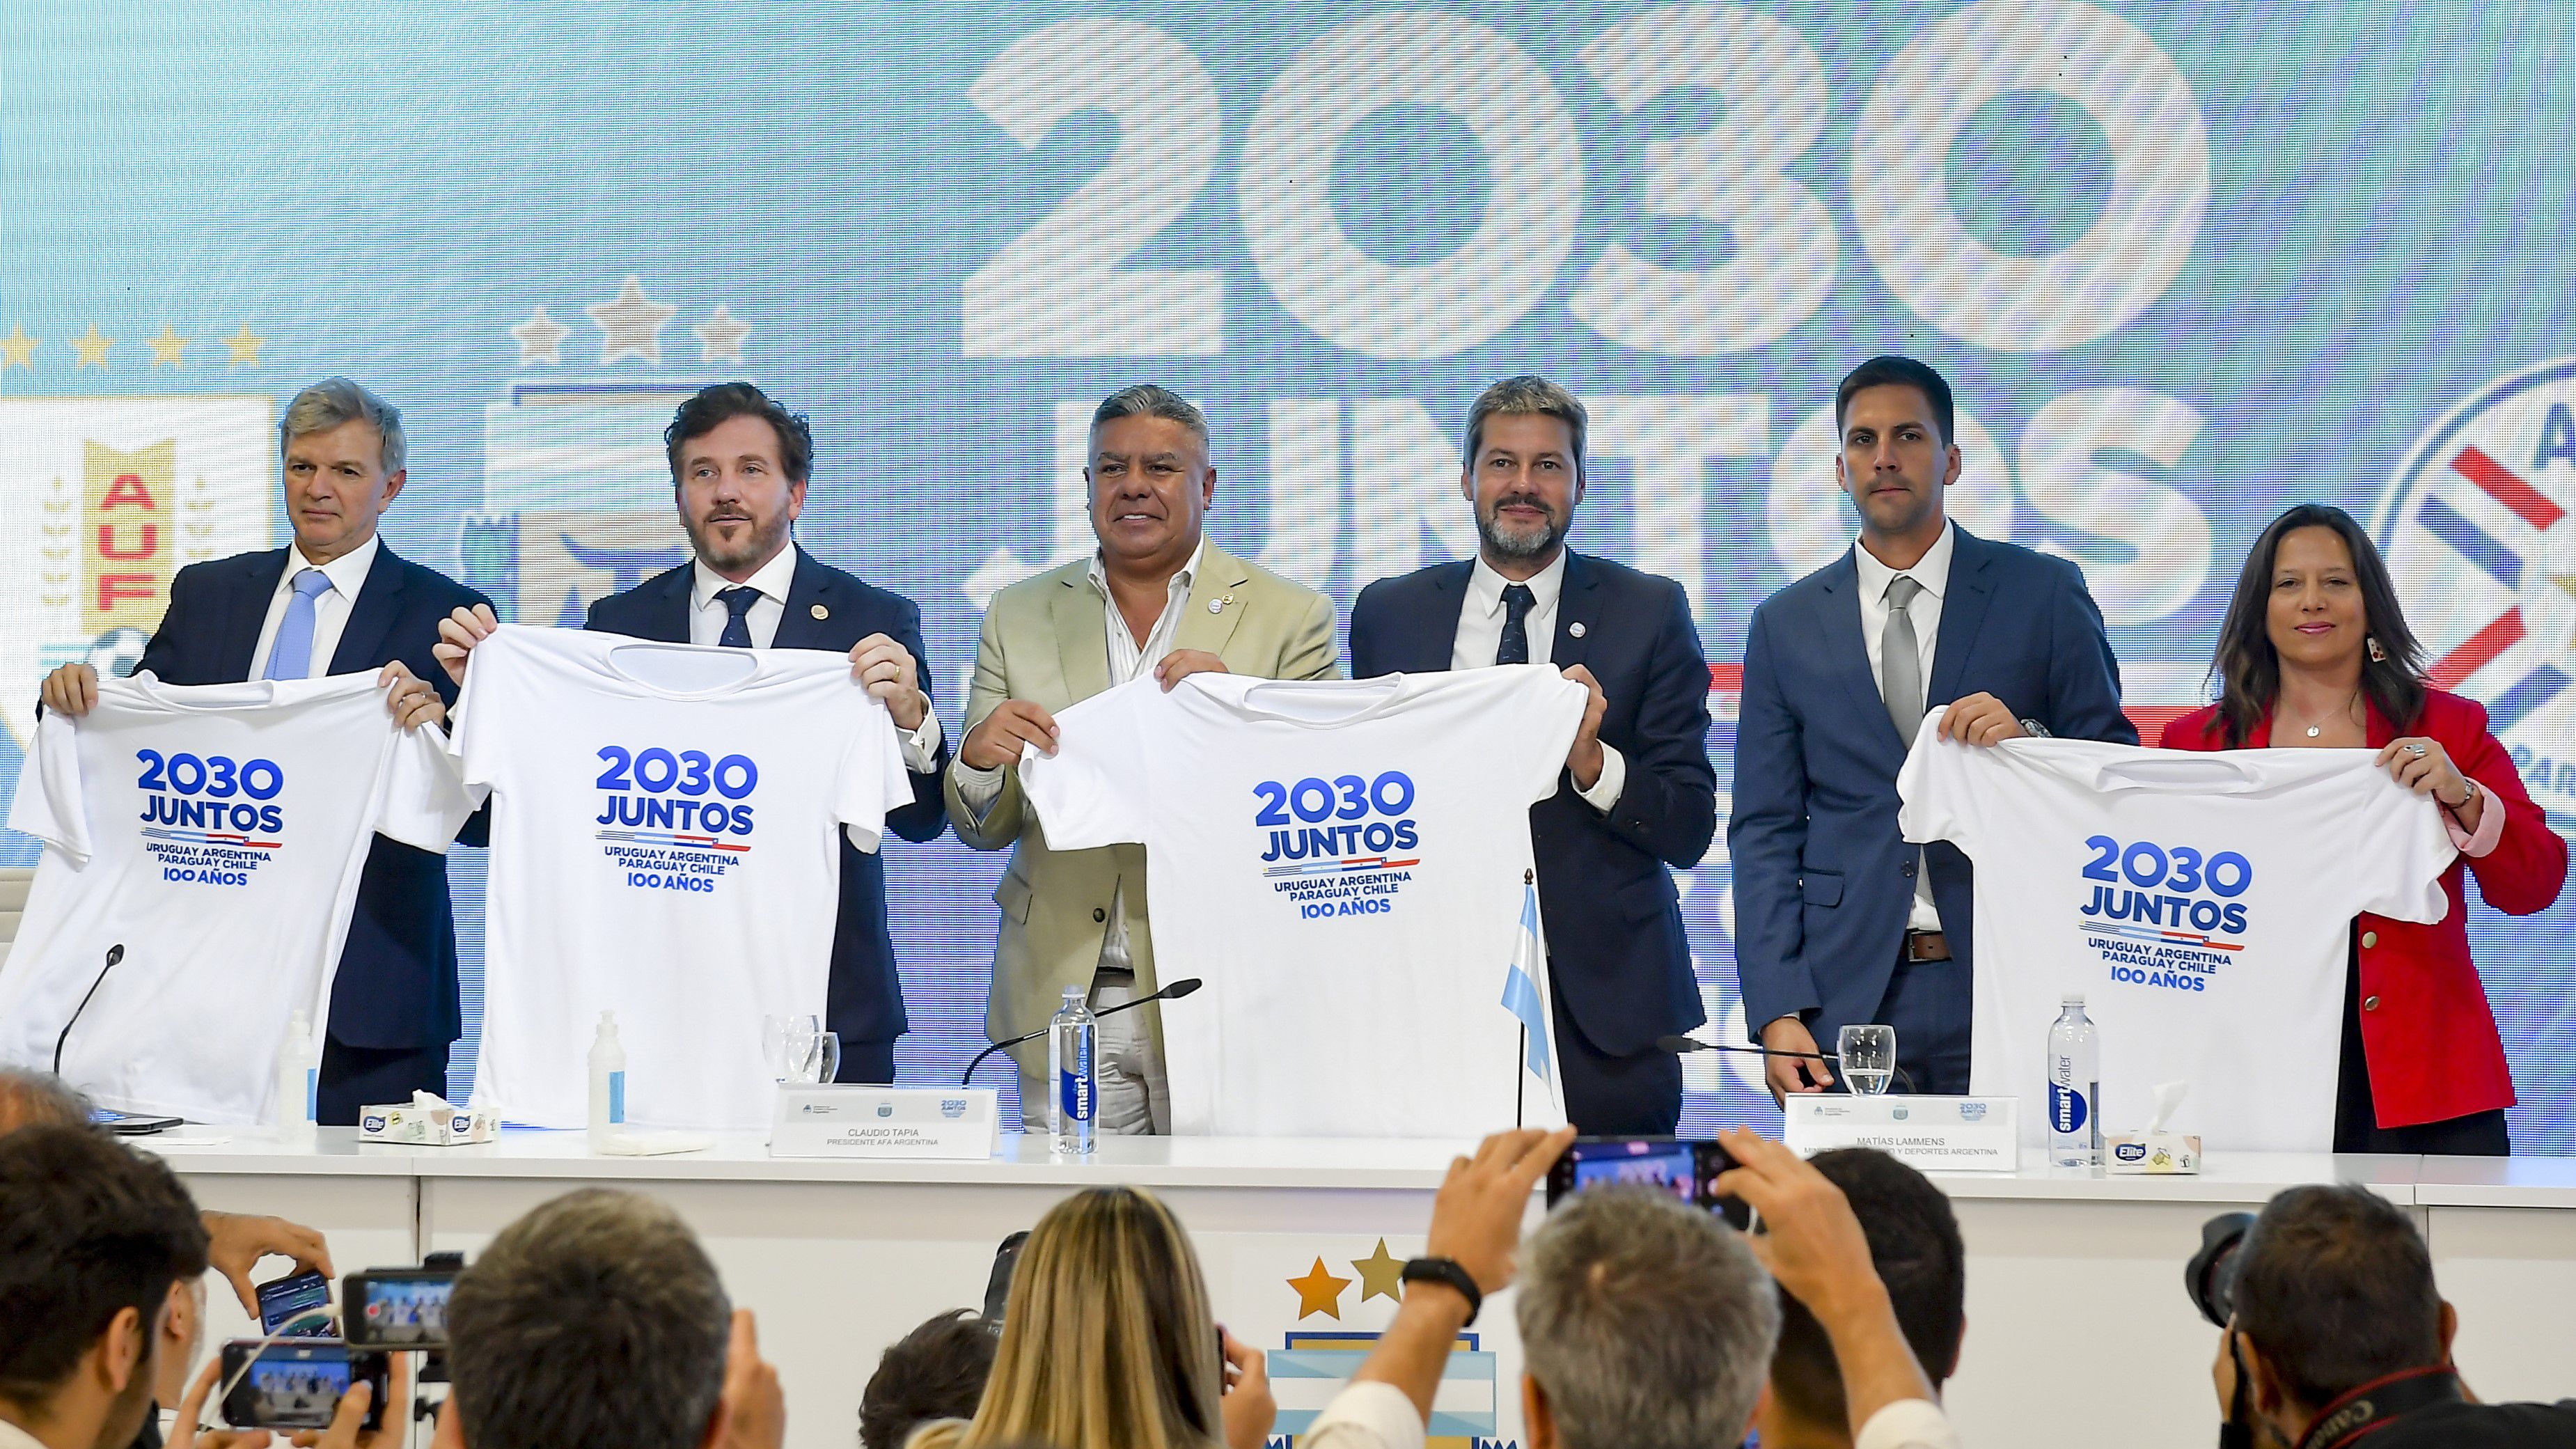 Argentína, Chile, Uruguay és Paraguay együtt pályázta meg a centenáriumi világbajnokság megrendezését.